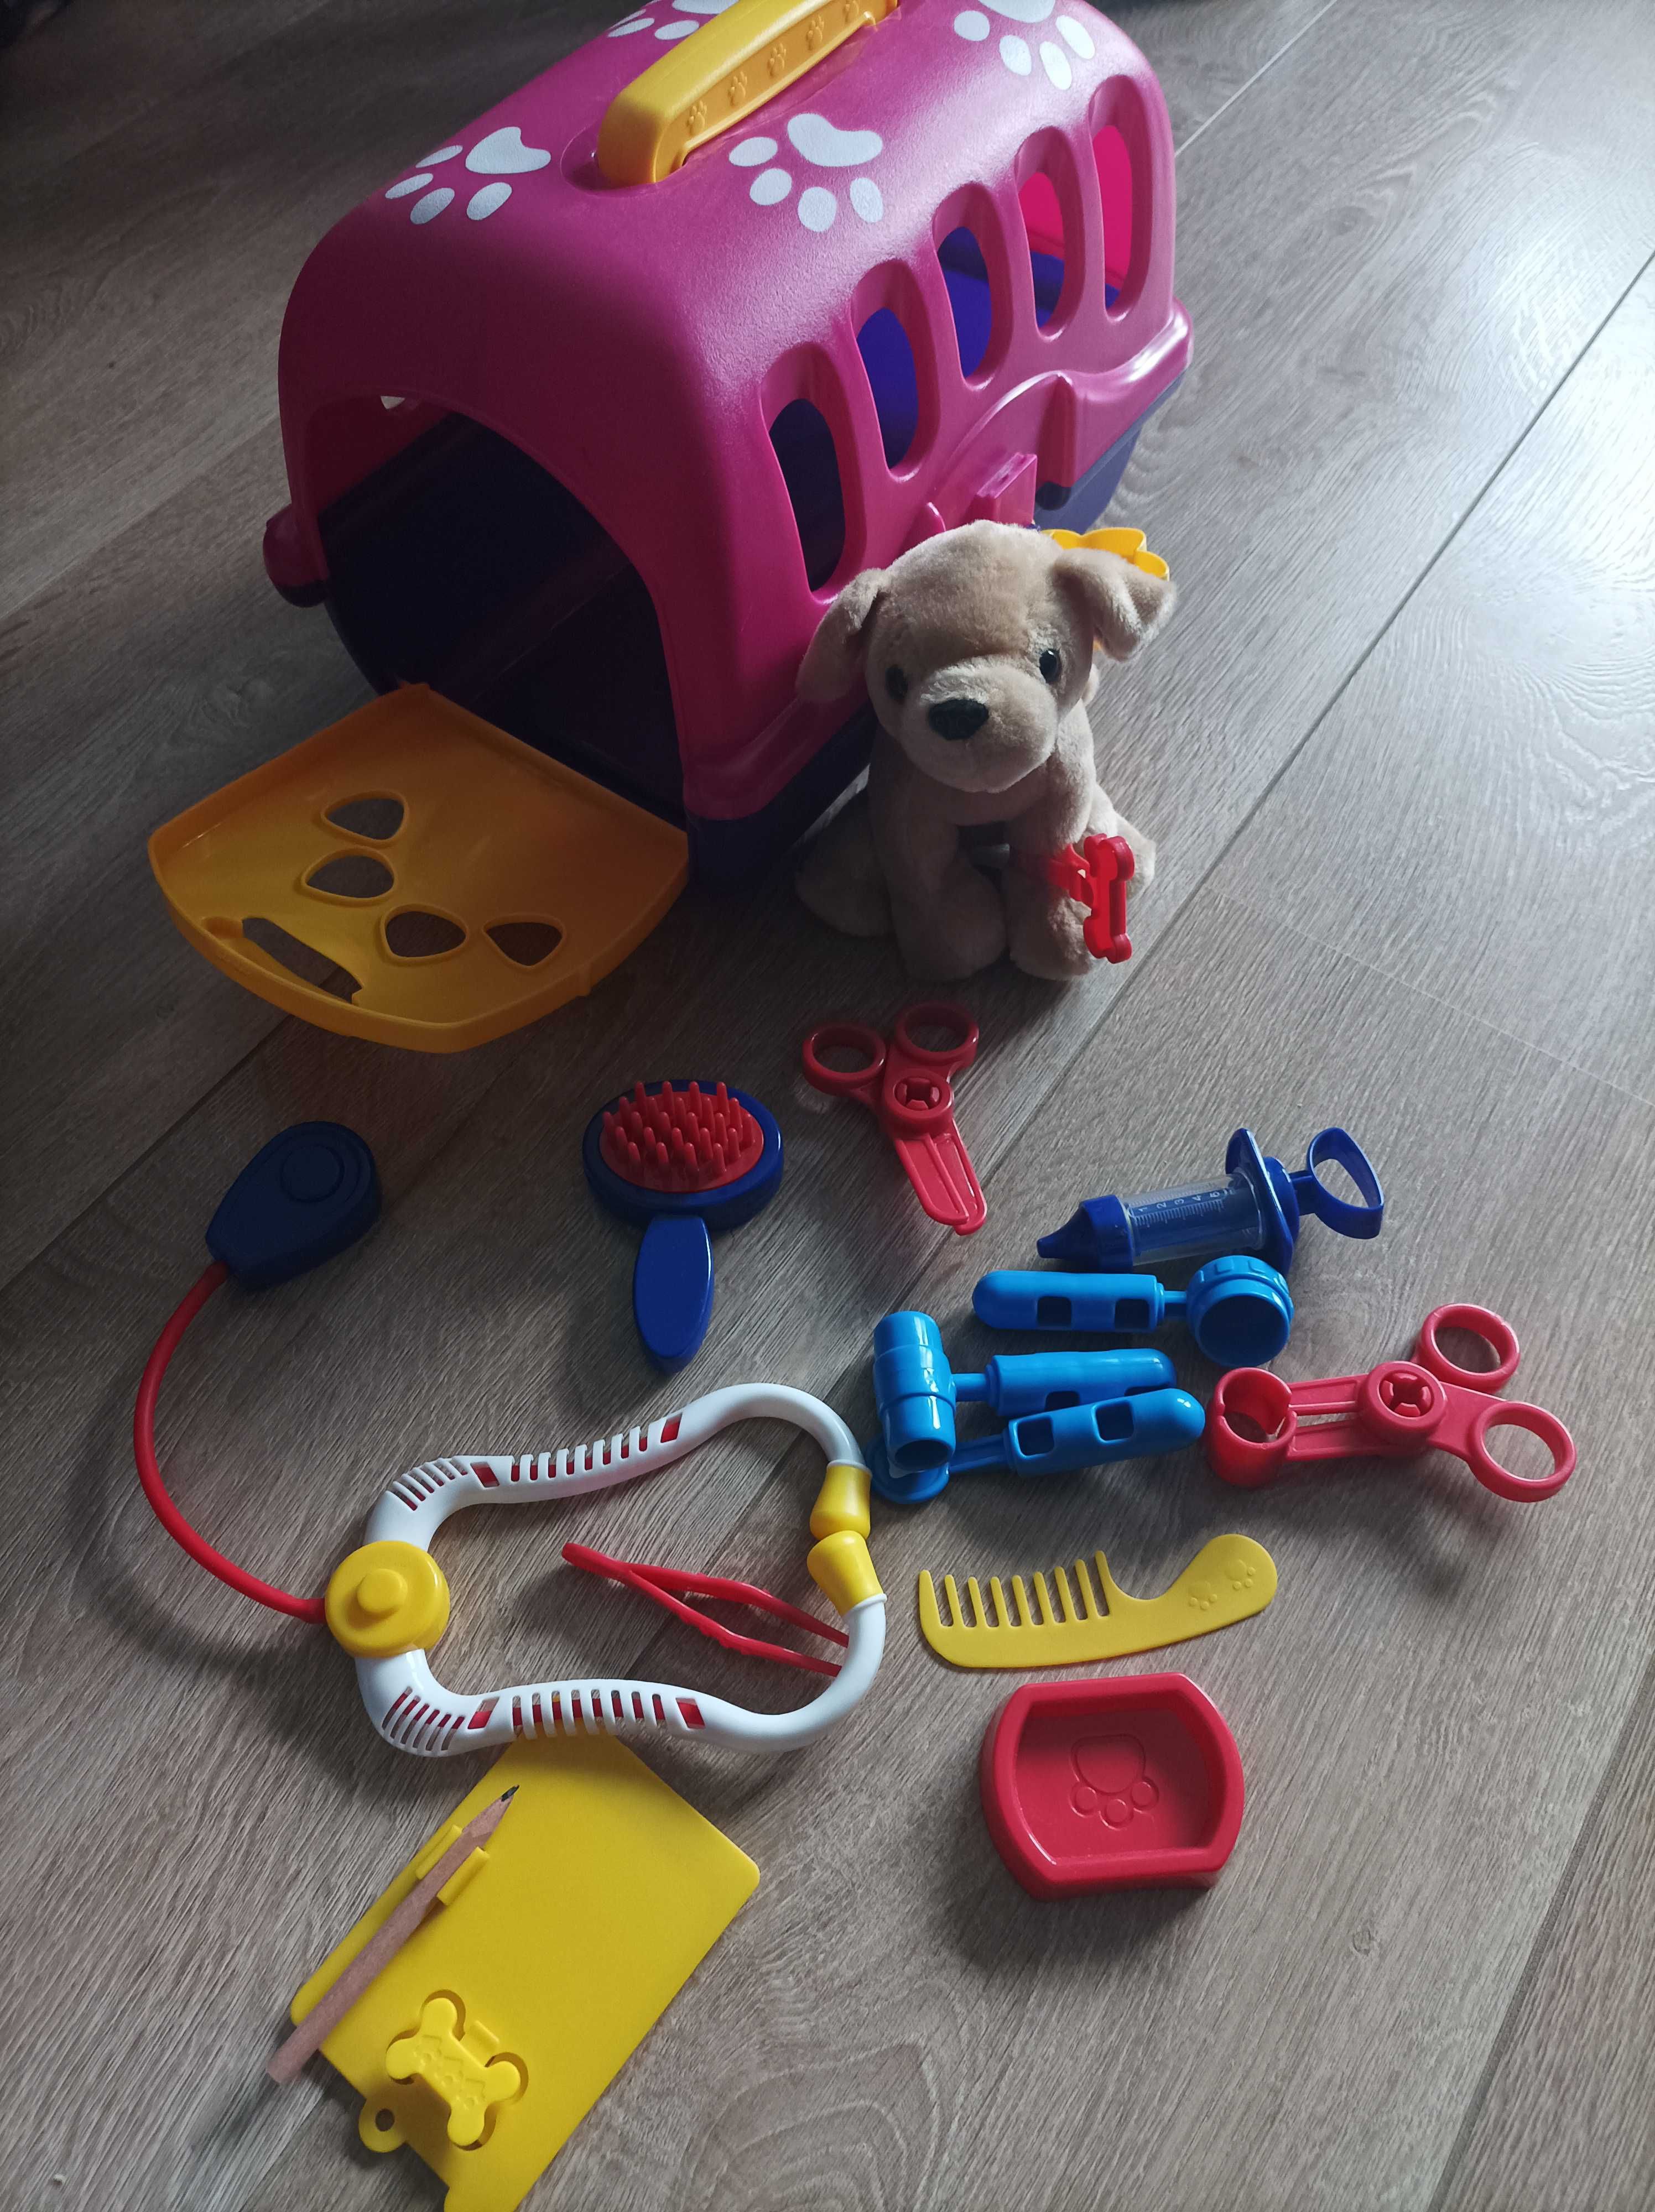 Zabawka - klatka dla psiaka z zestawem do pielęgnacji i leczenia